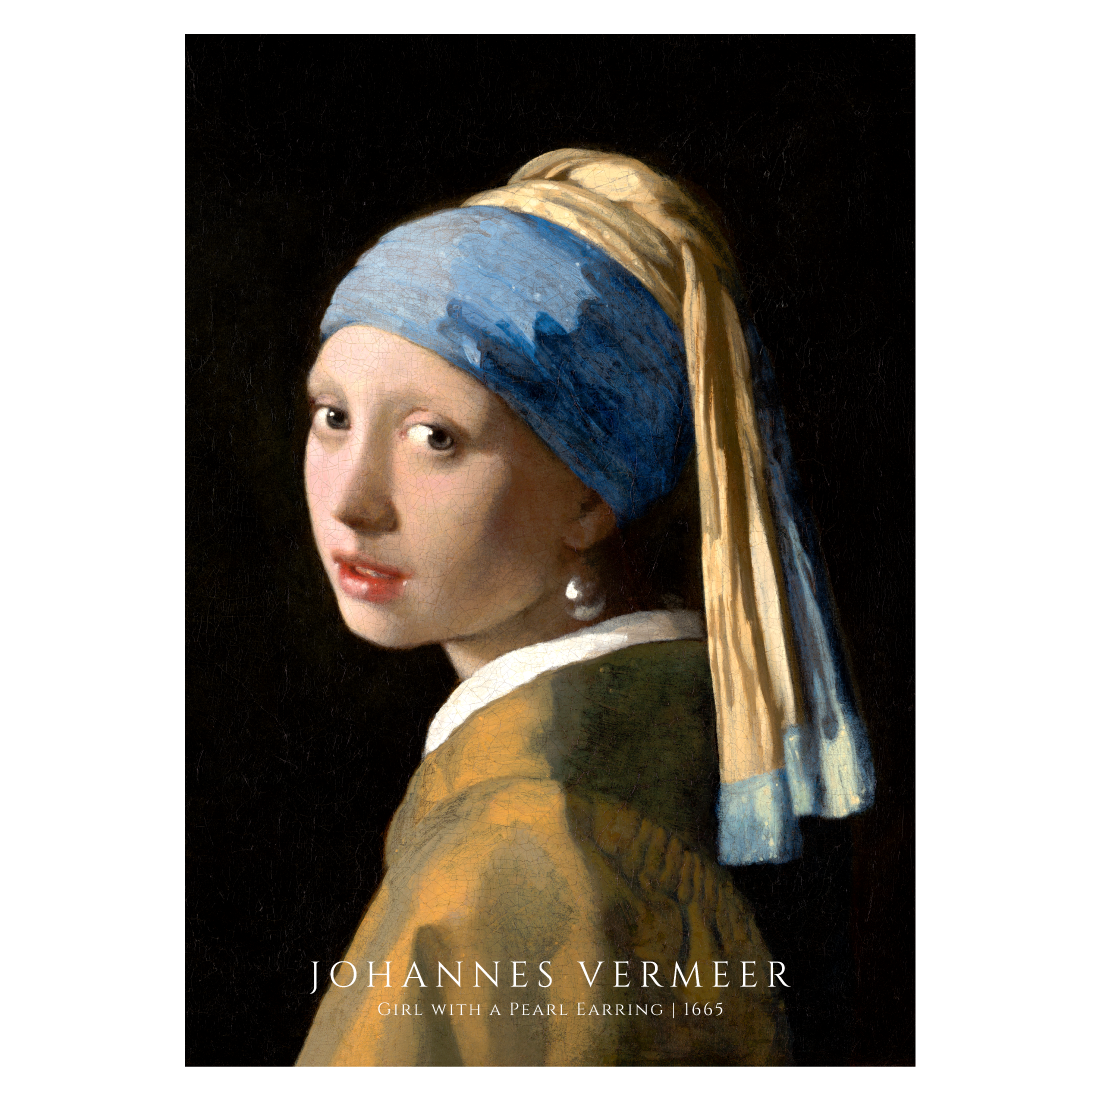 Kunstplakat med Johannes Vermeer "Girl with a pearl earring"